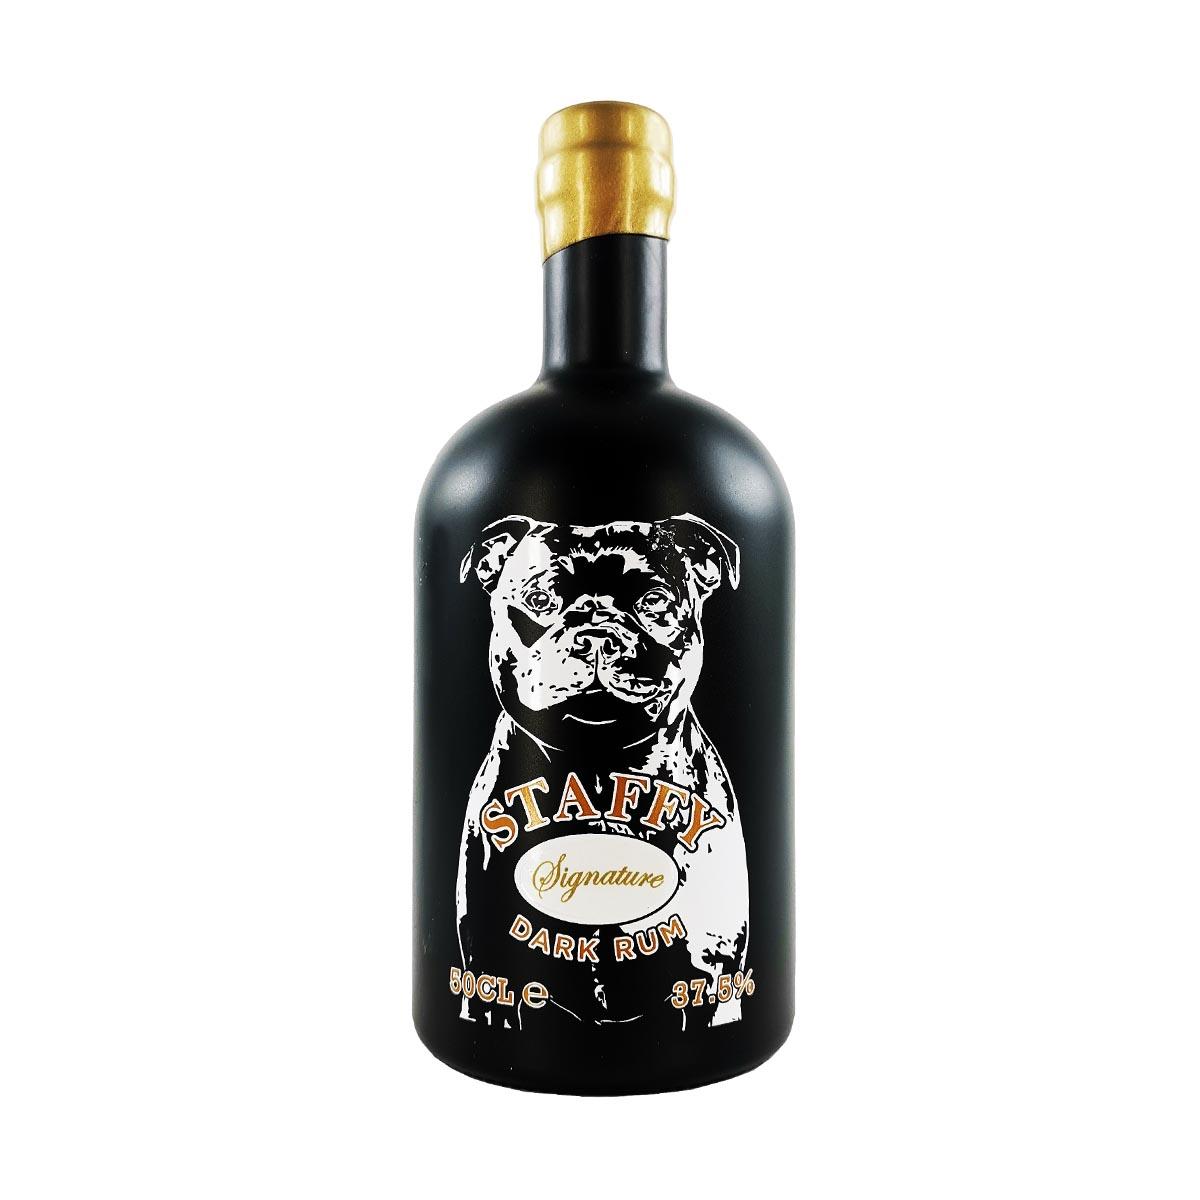 Staffy Signature Dark Rum 50cl